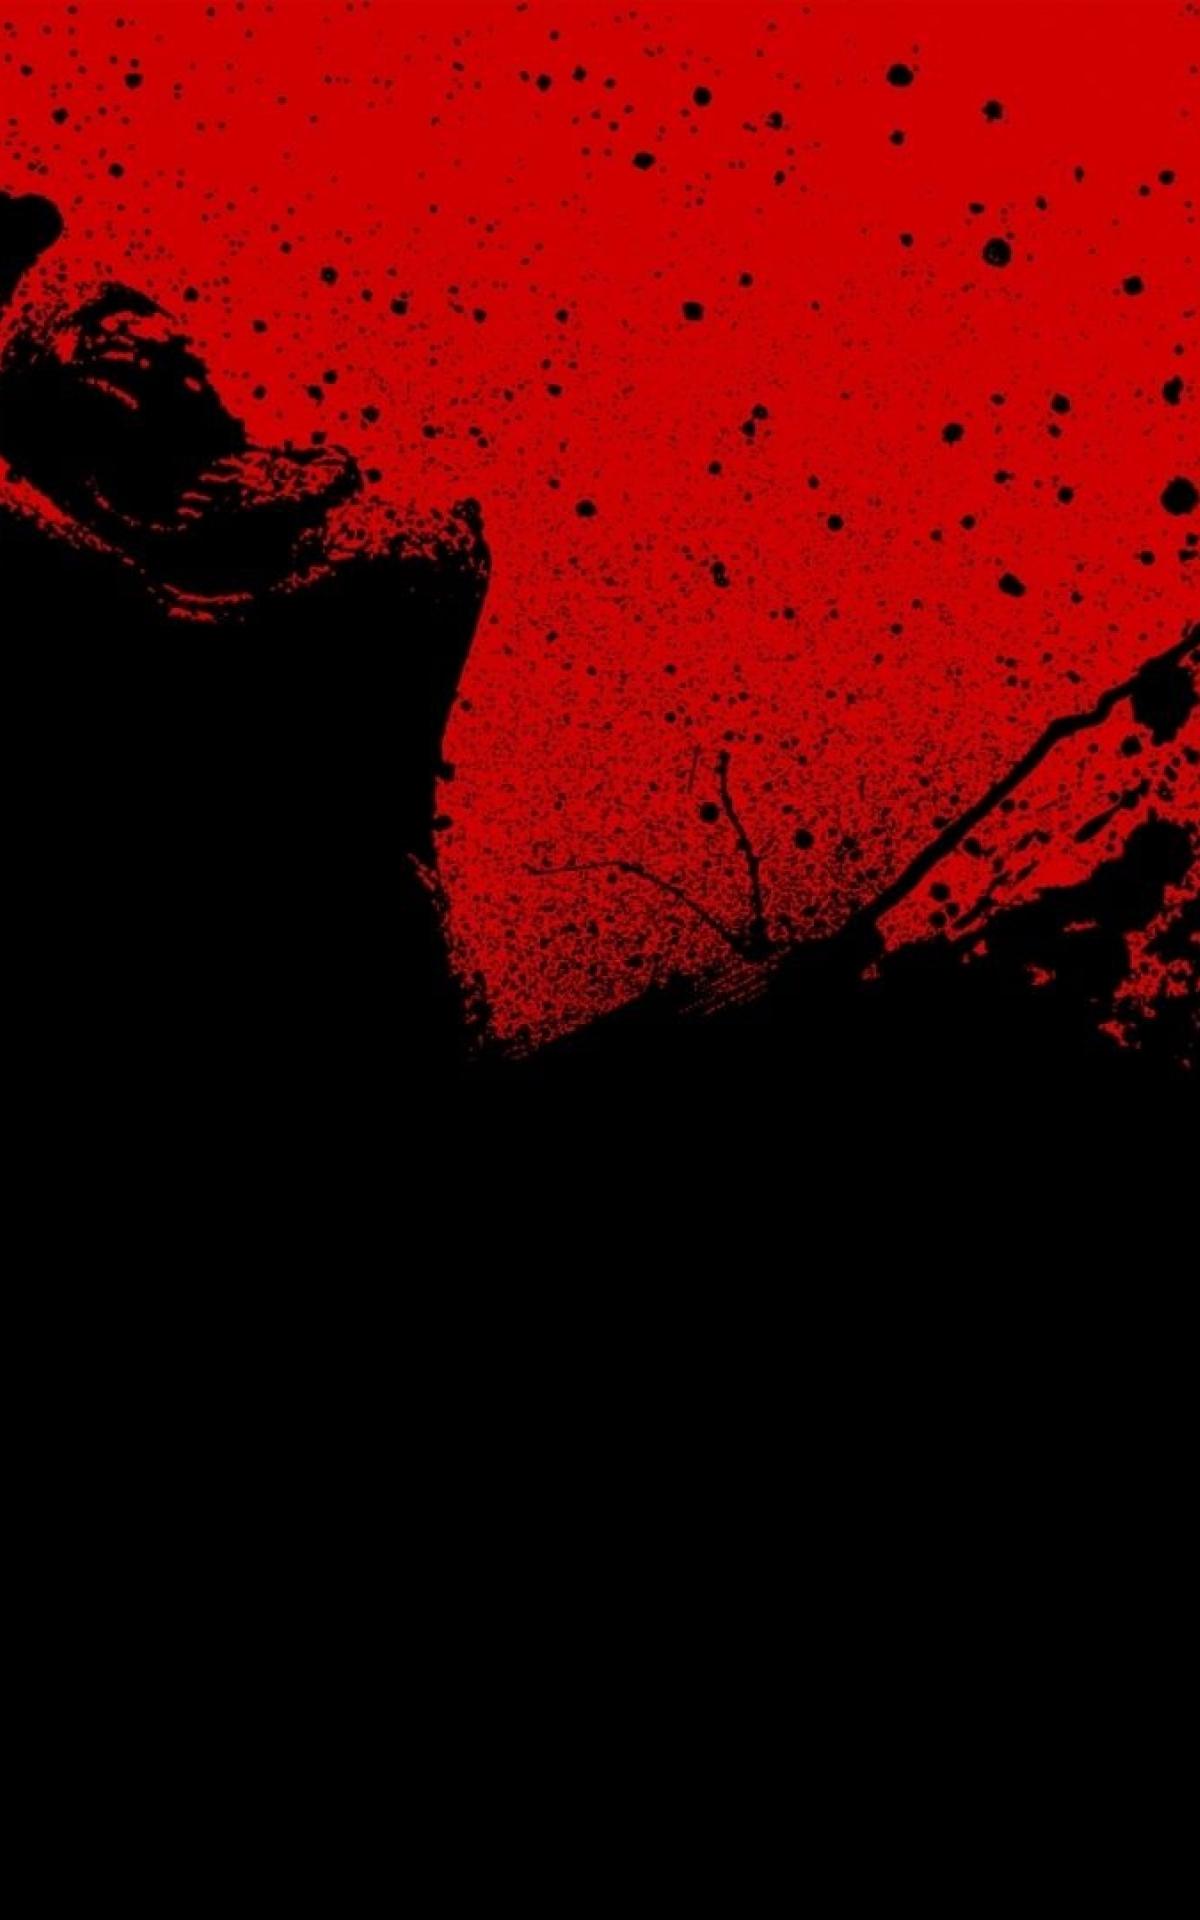 Free download 30 days of night Red Black Blood Wallpaper